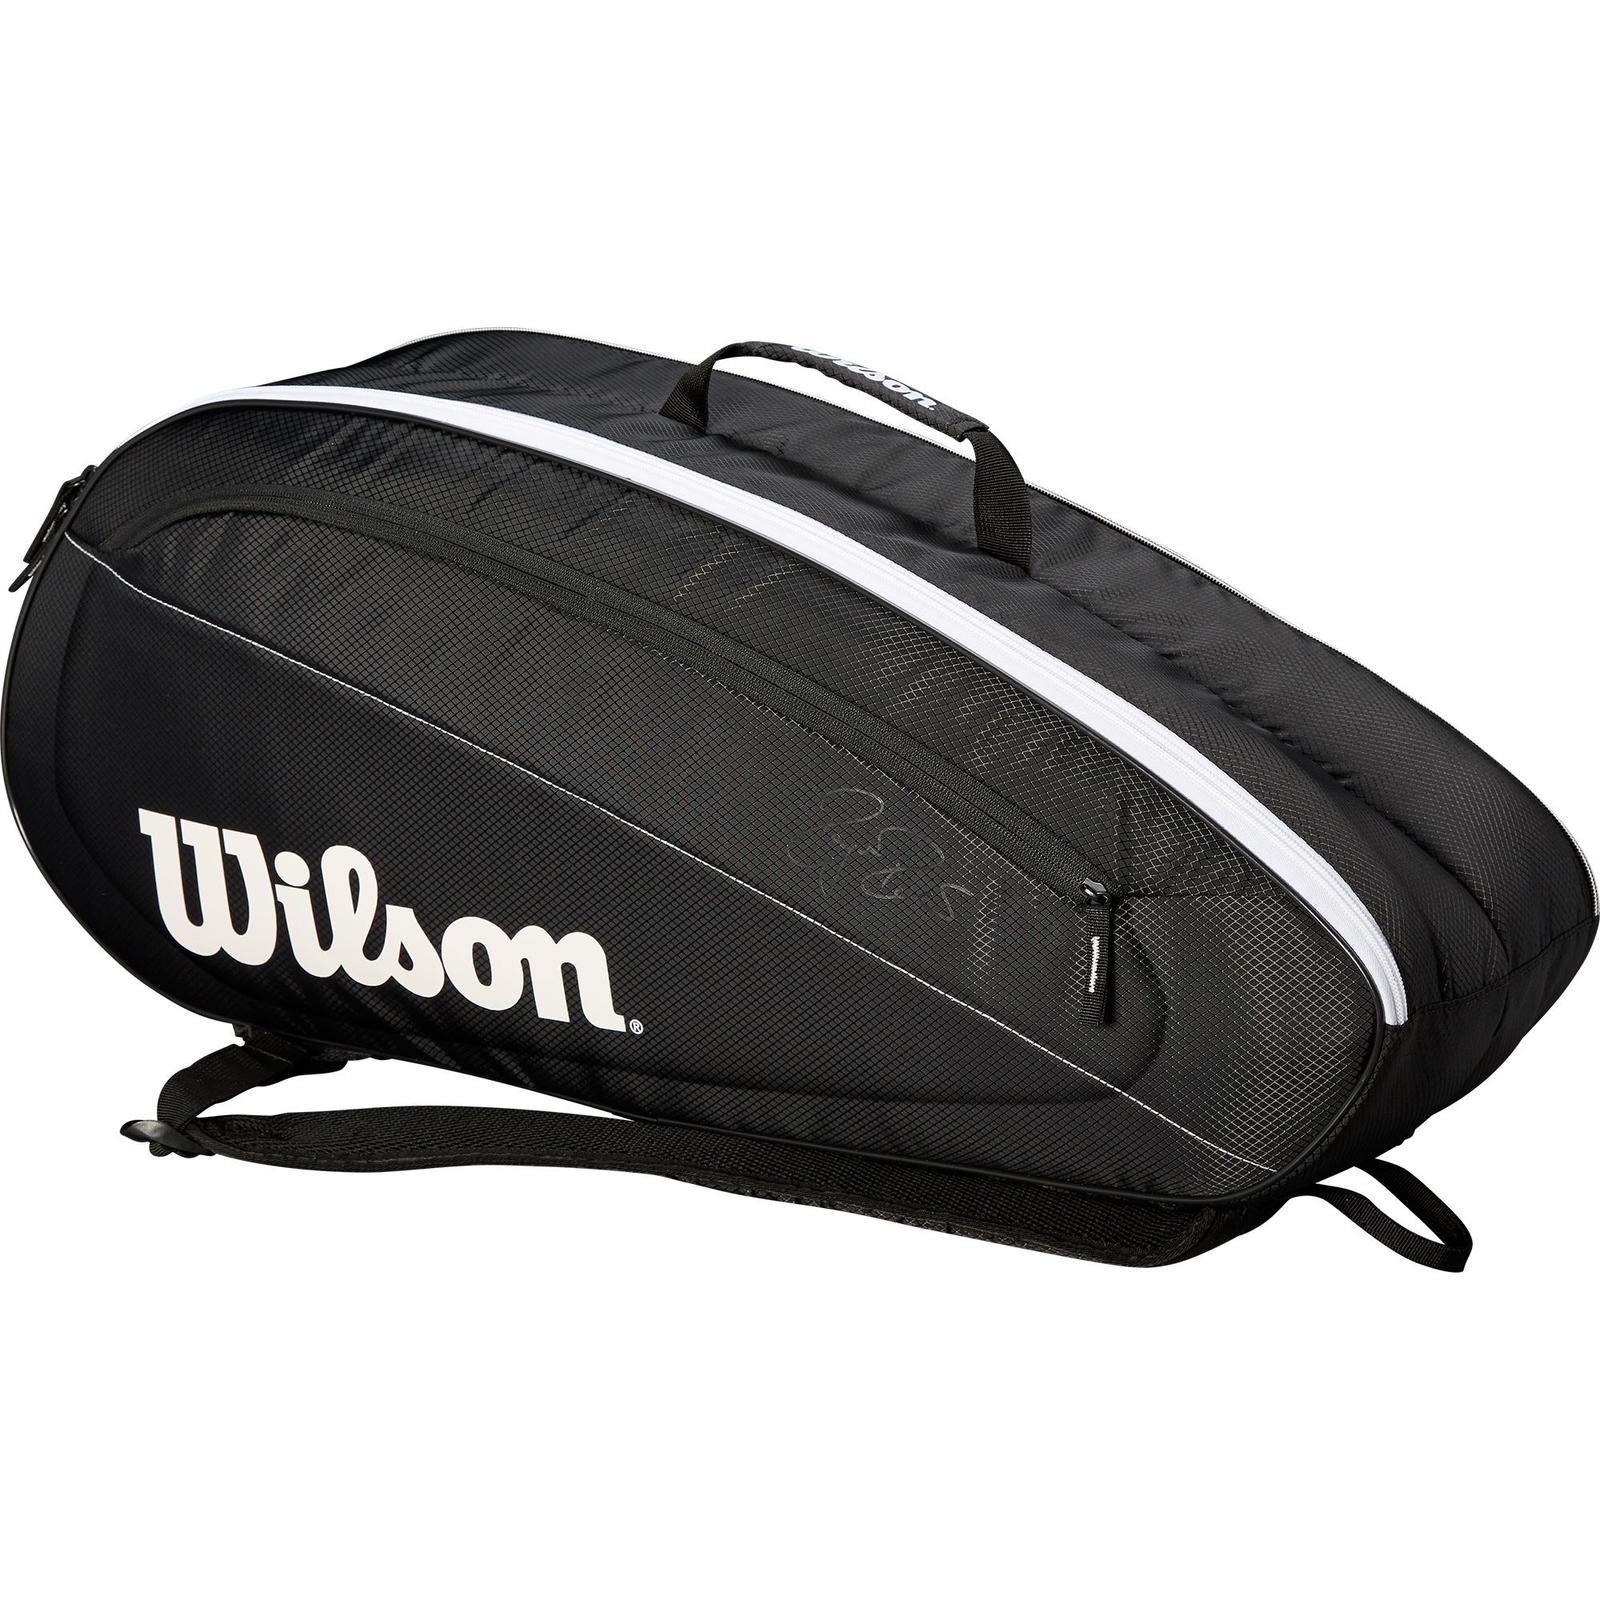 Wilson Federer Team 6 Pack Tennis Racquet Bag 2018 Black/White | eBay